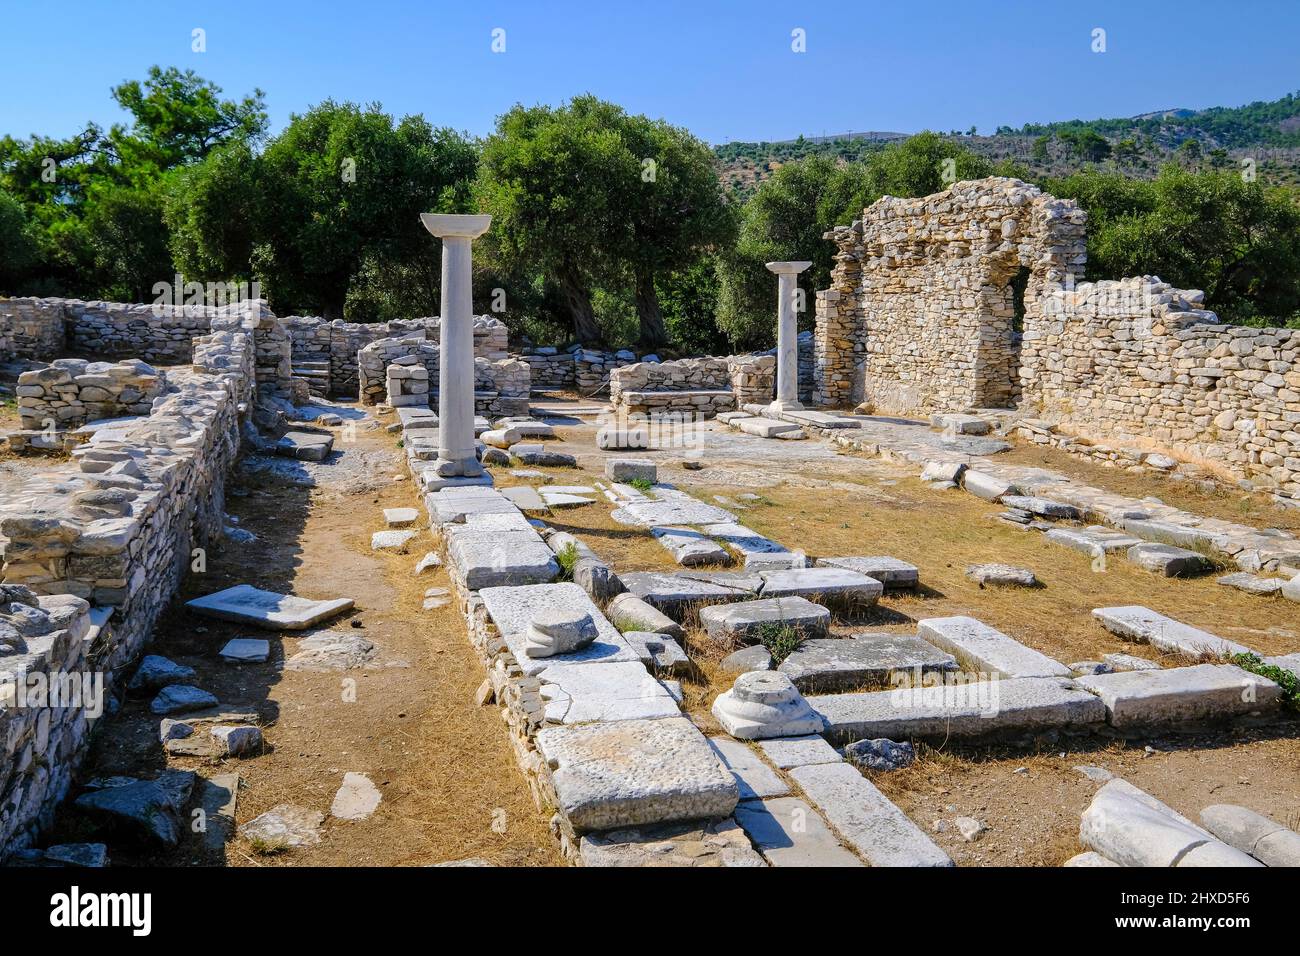 Aliki, Thassos, Grecia - la penisola marmorea di Aliki, con le sue antiche rovine e baie balneari, è una destinazione popolare per i turisti. THASSOS appartiene alla Macedonia orientale e alla Tracia, anche alla Macedonia orientale e alla Tracia. Foto Stock